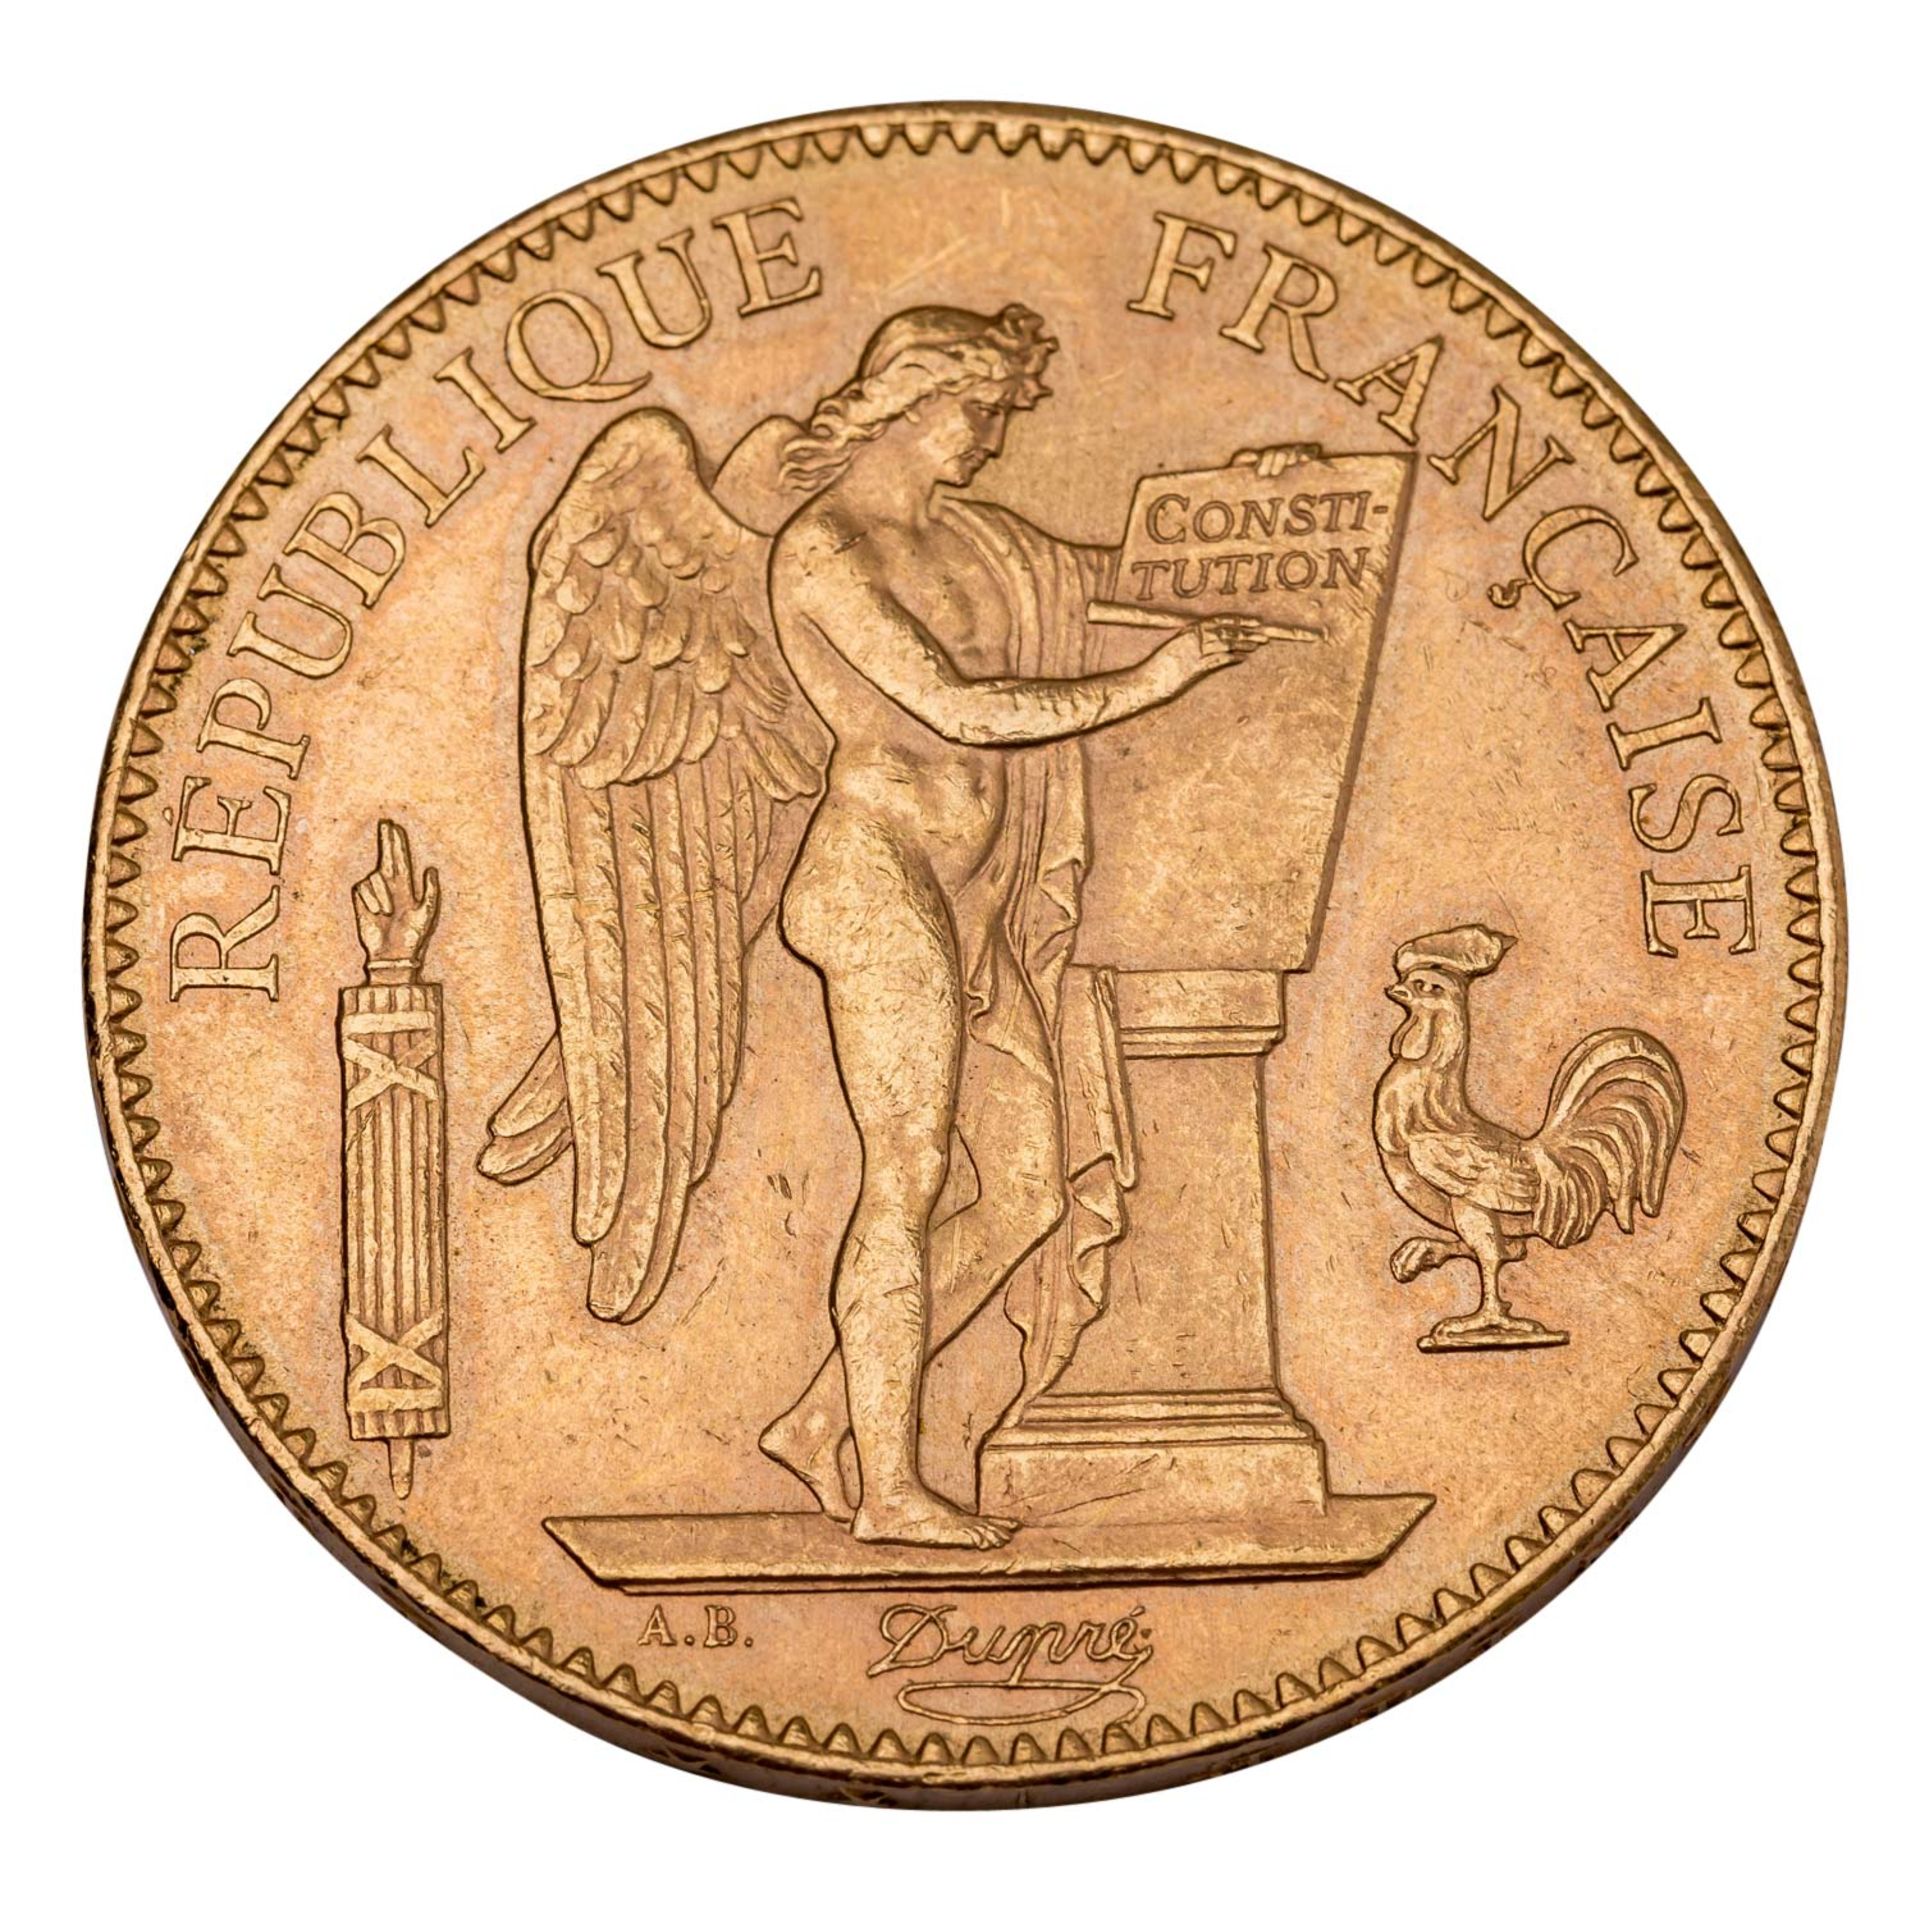 Frankreich - 100 Francs 1912/A, GOLD,  - Bild 2 aus 2